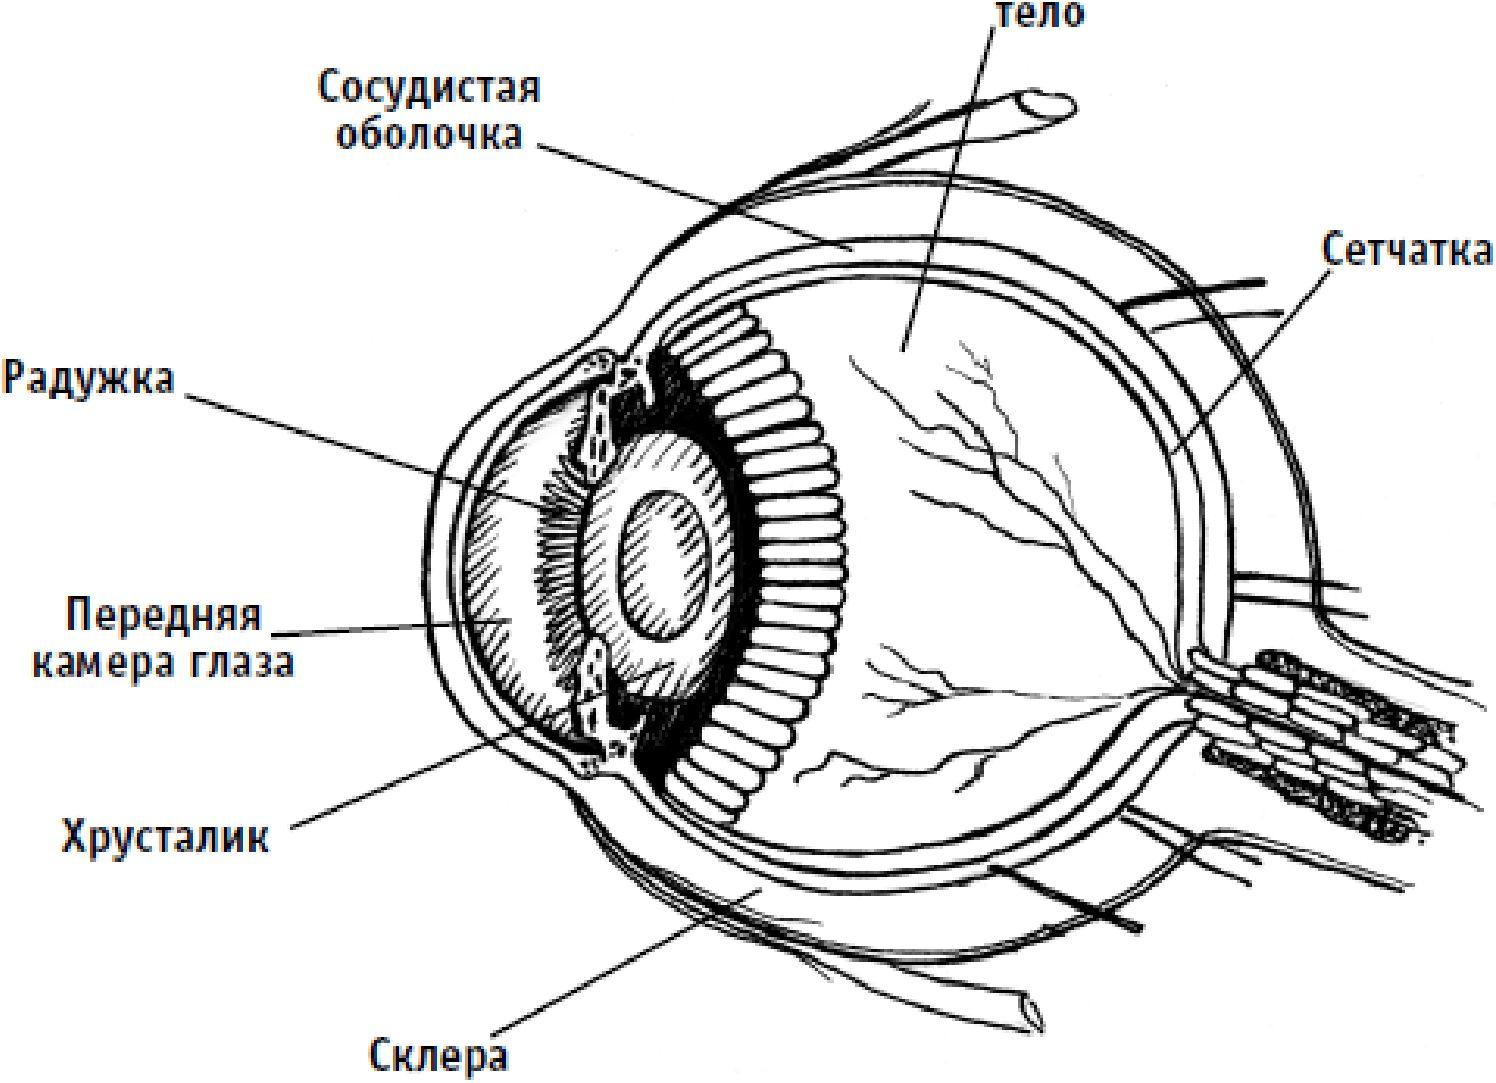 К оптической системе глаза относятся хрусталик. Светопреломляющие среды глаза анатомия. Наружное строение глаза. Строение глаза без подписей. Светопреломляющий аппарат глаза.